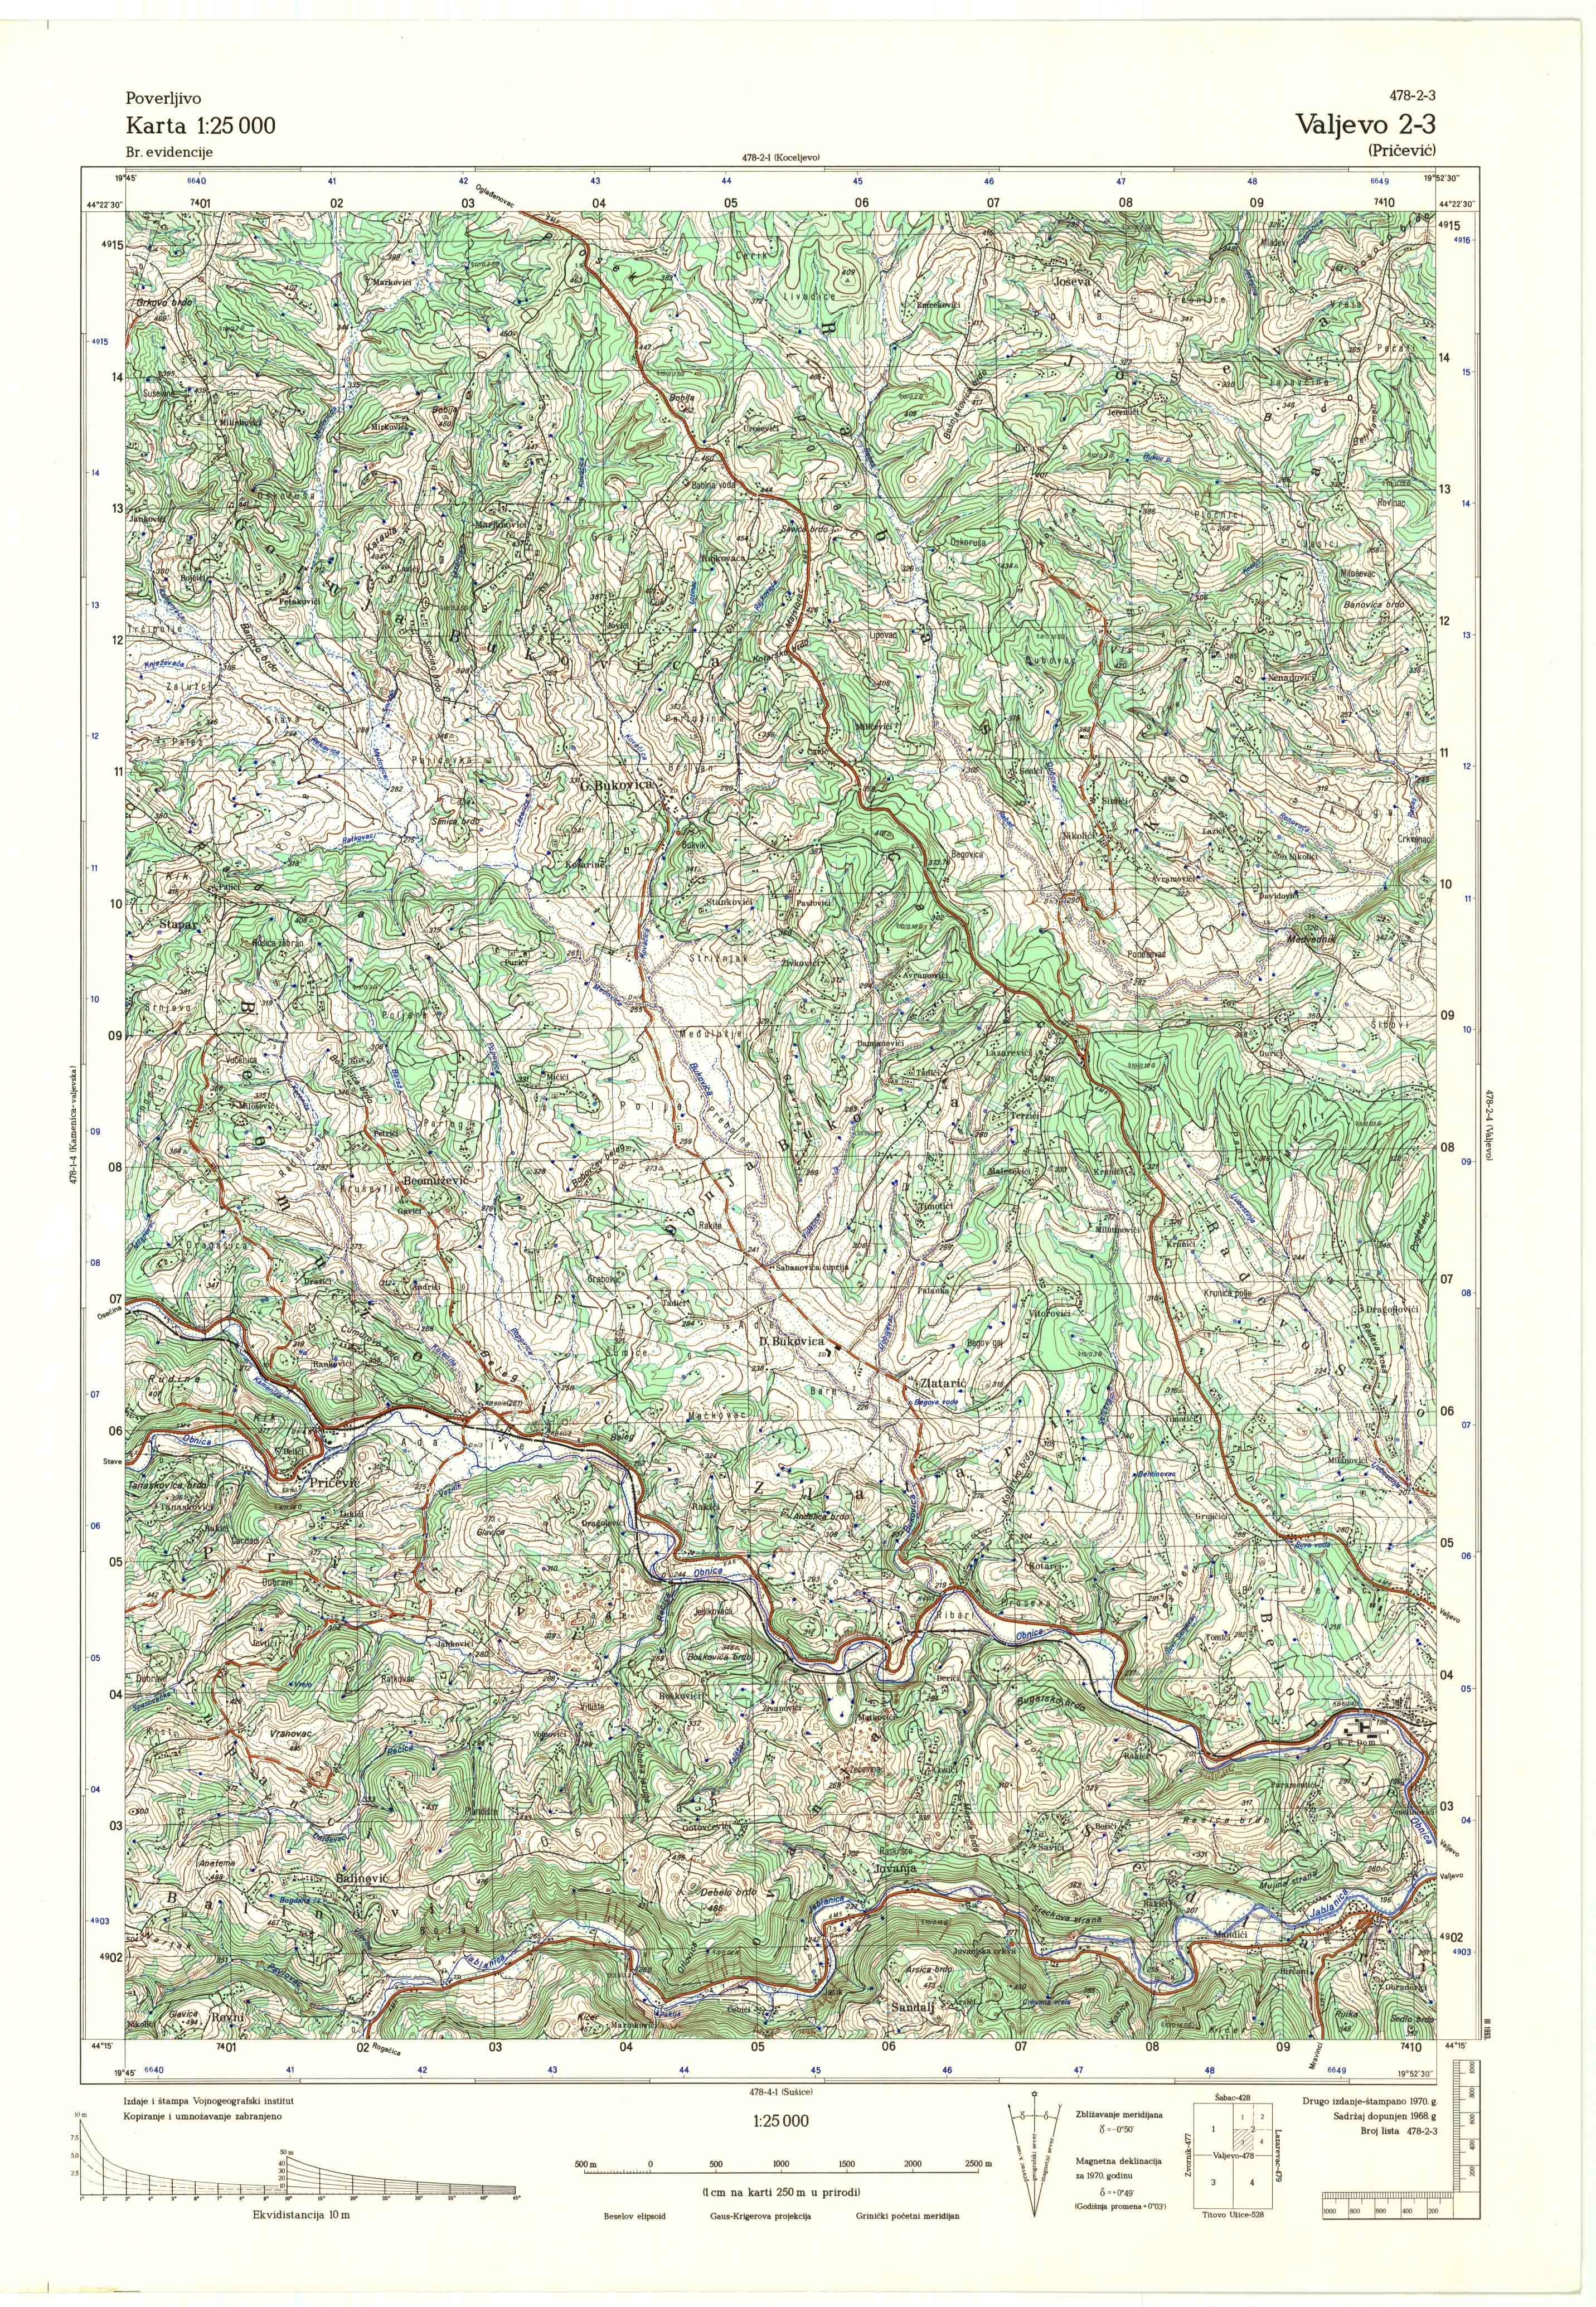  topografska karta srbije 25000 JNA  Valjevo